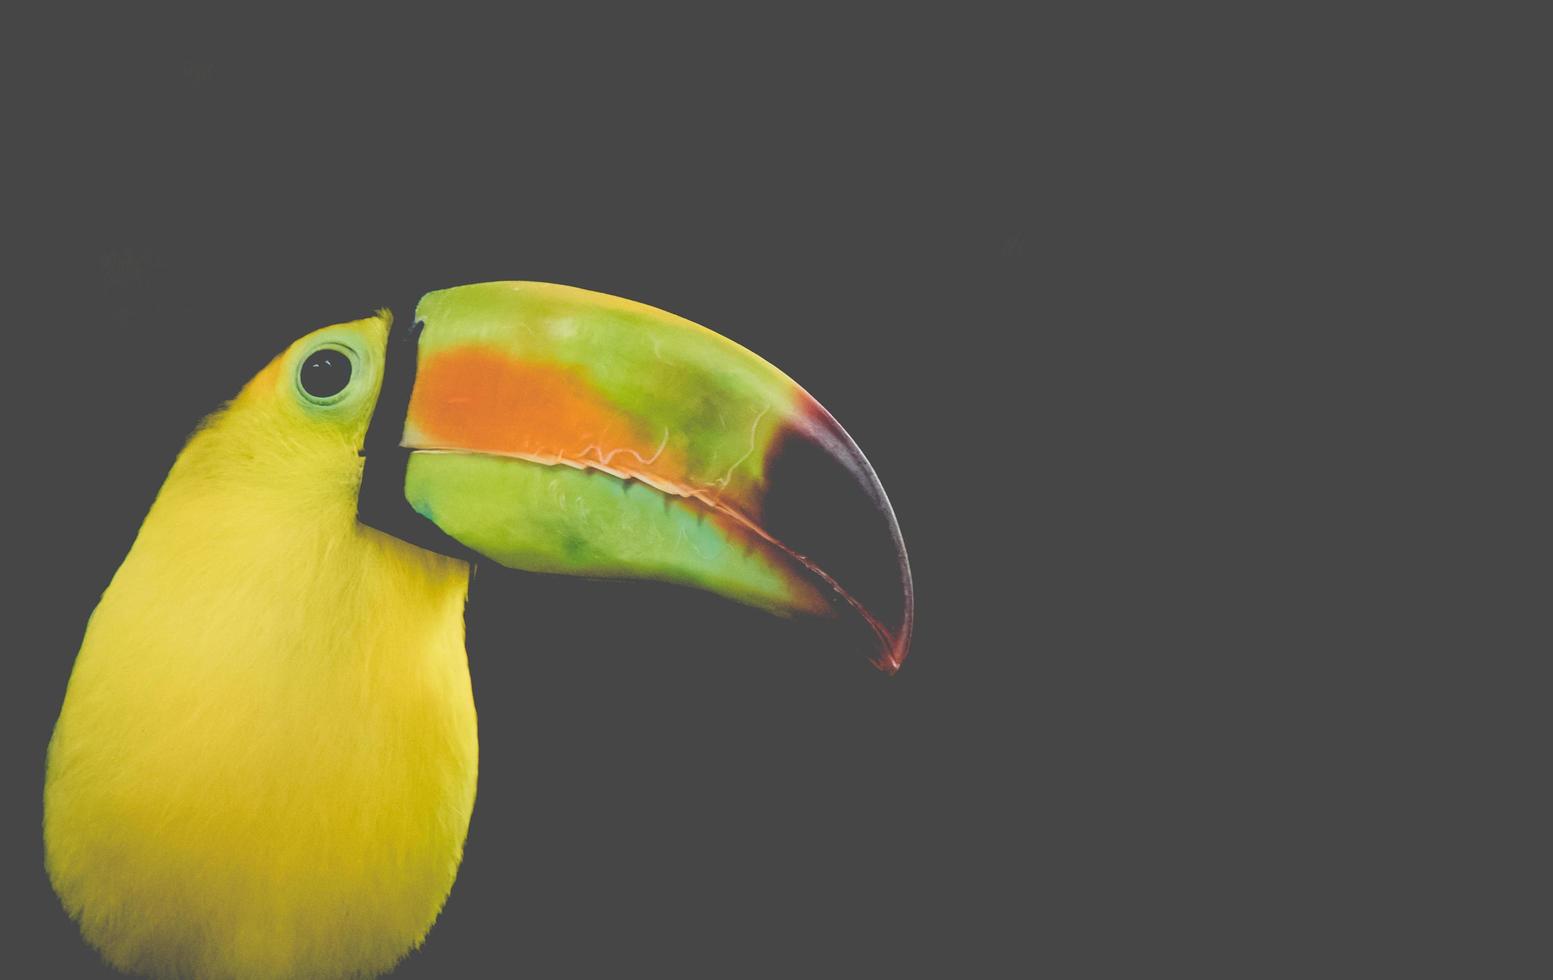 perfil lateral do pássaro tucano foto